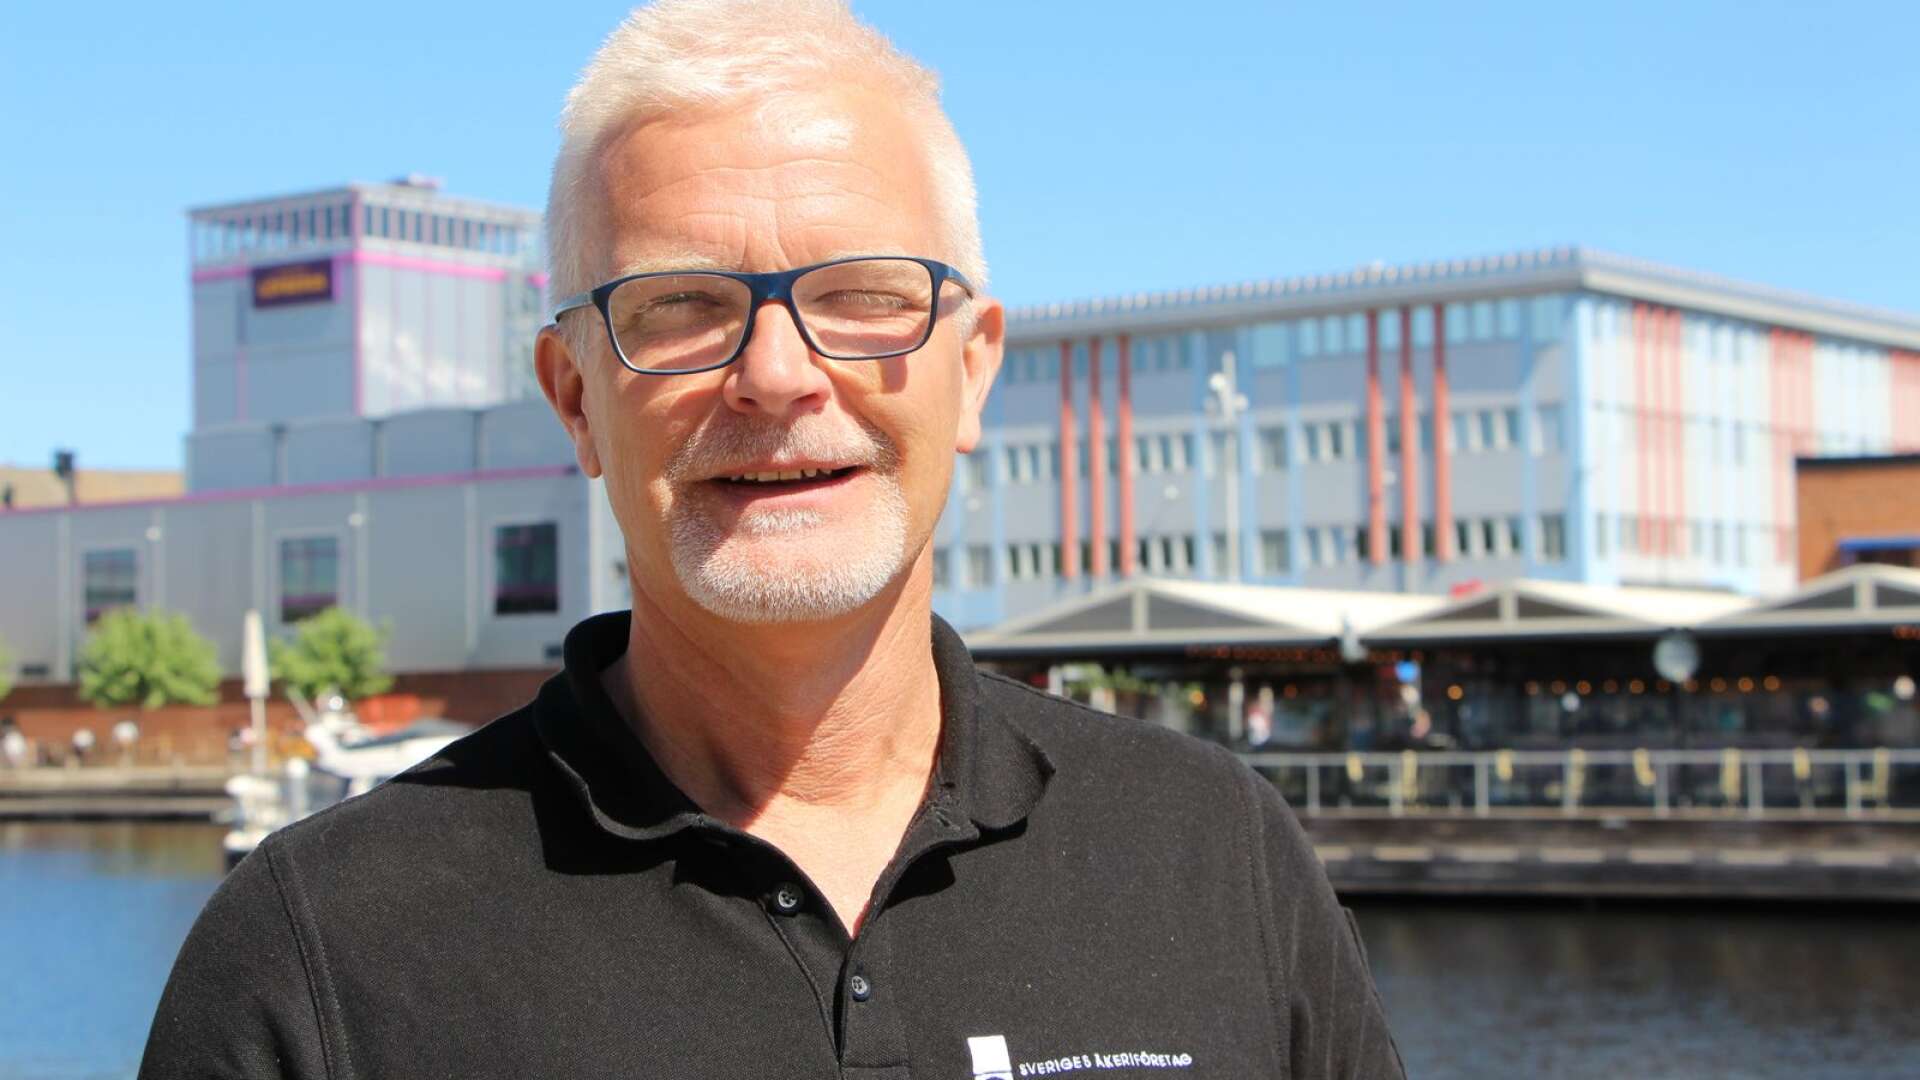 Per Broholm, regionchef för Sveriges åkeriföretag, konstaterar att den nya digitala satsningen Fair transport har gett en ökad målmedvetenhet för hållbara transporter i branschen.